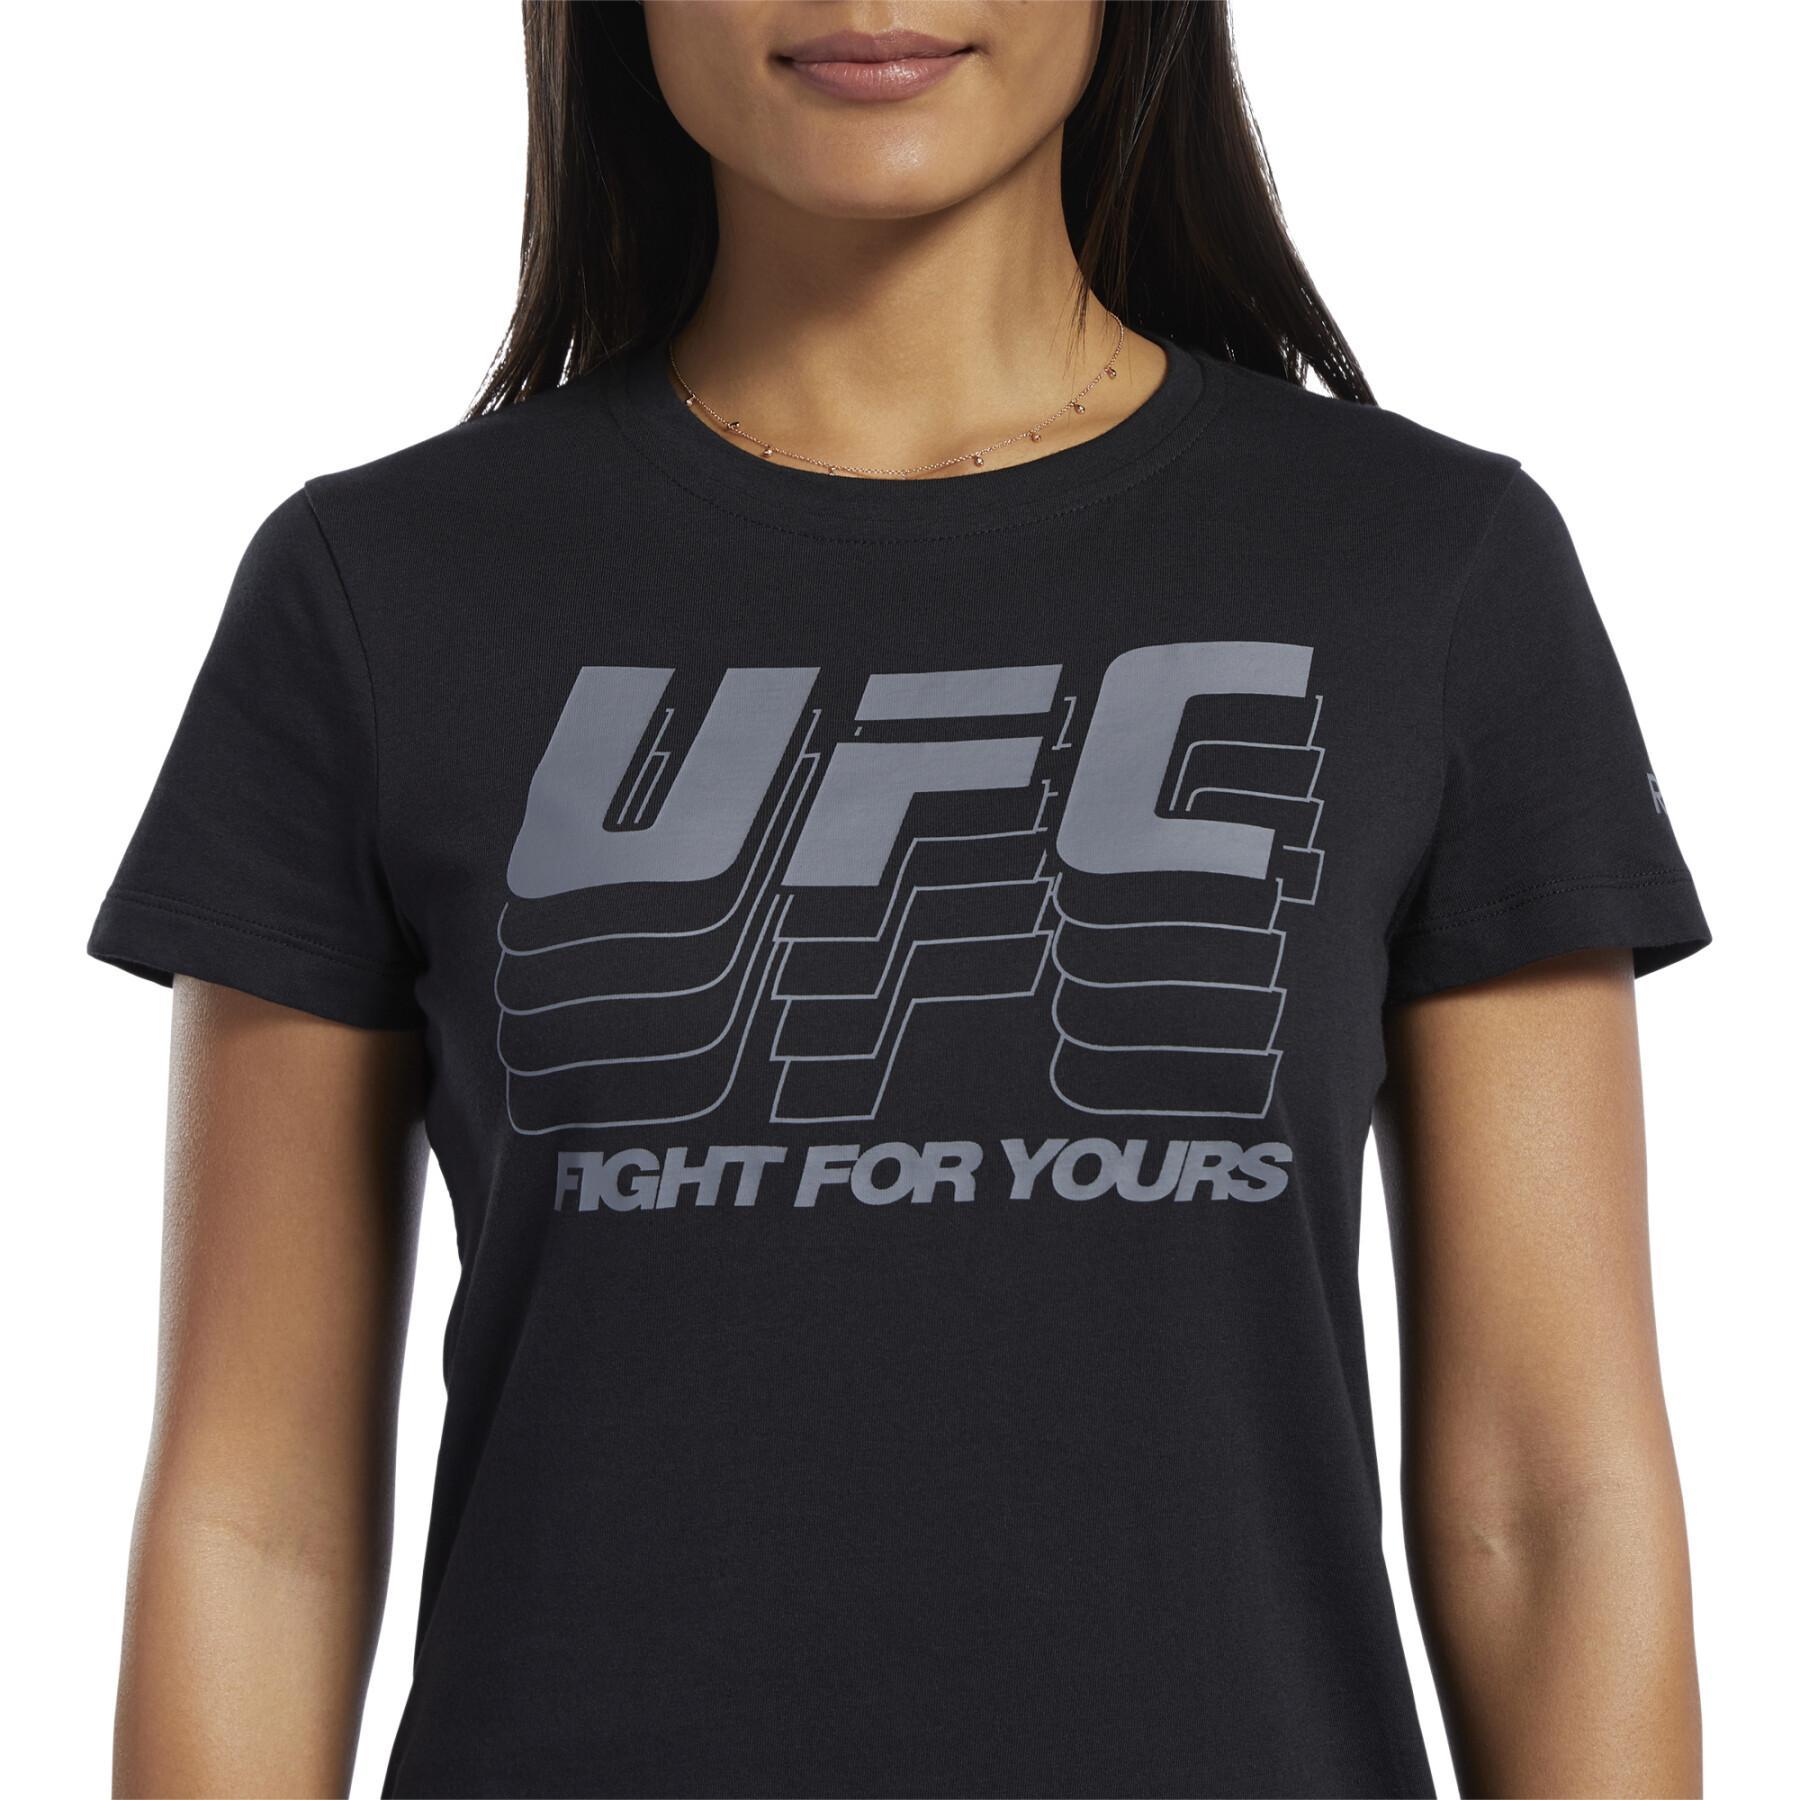 Women's T-shirt Reebok UFC FG Logo